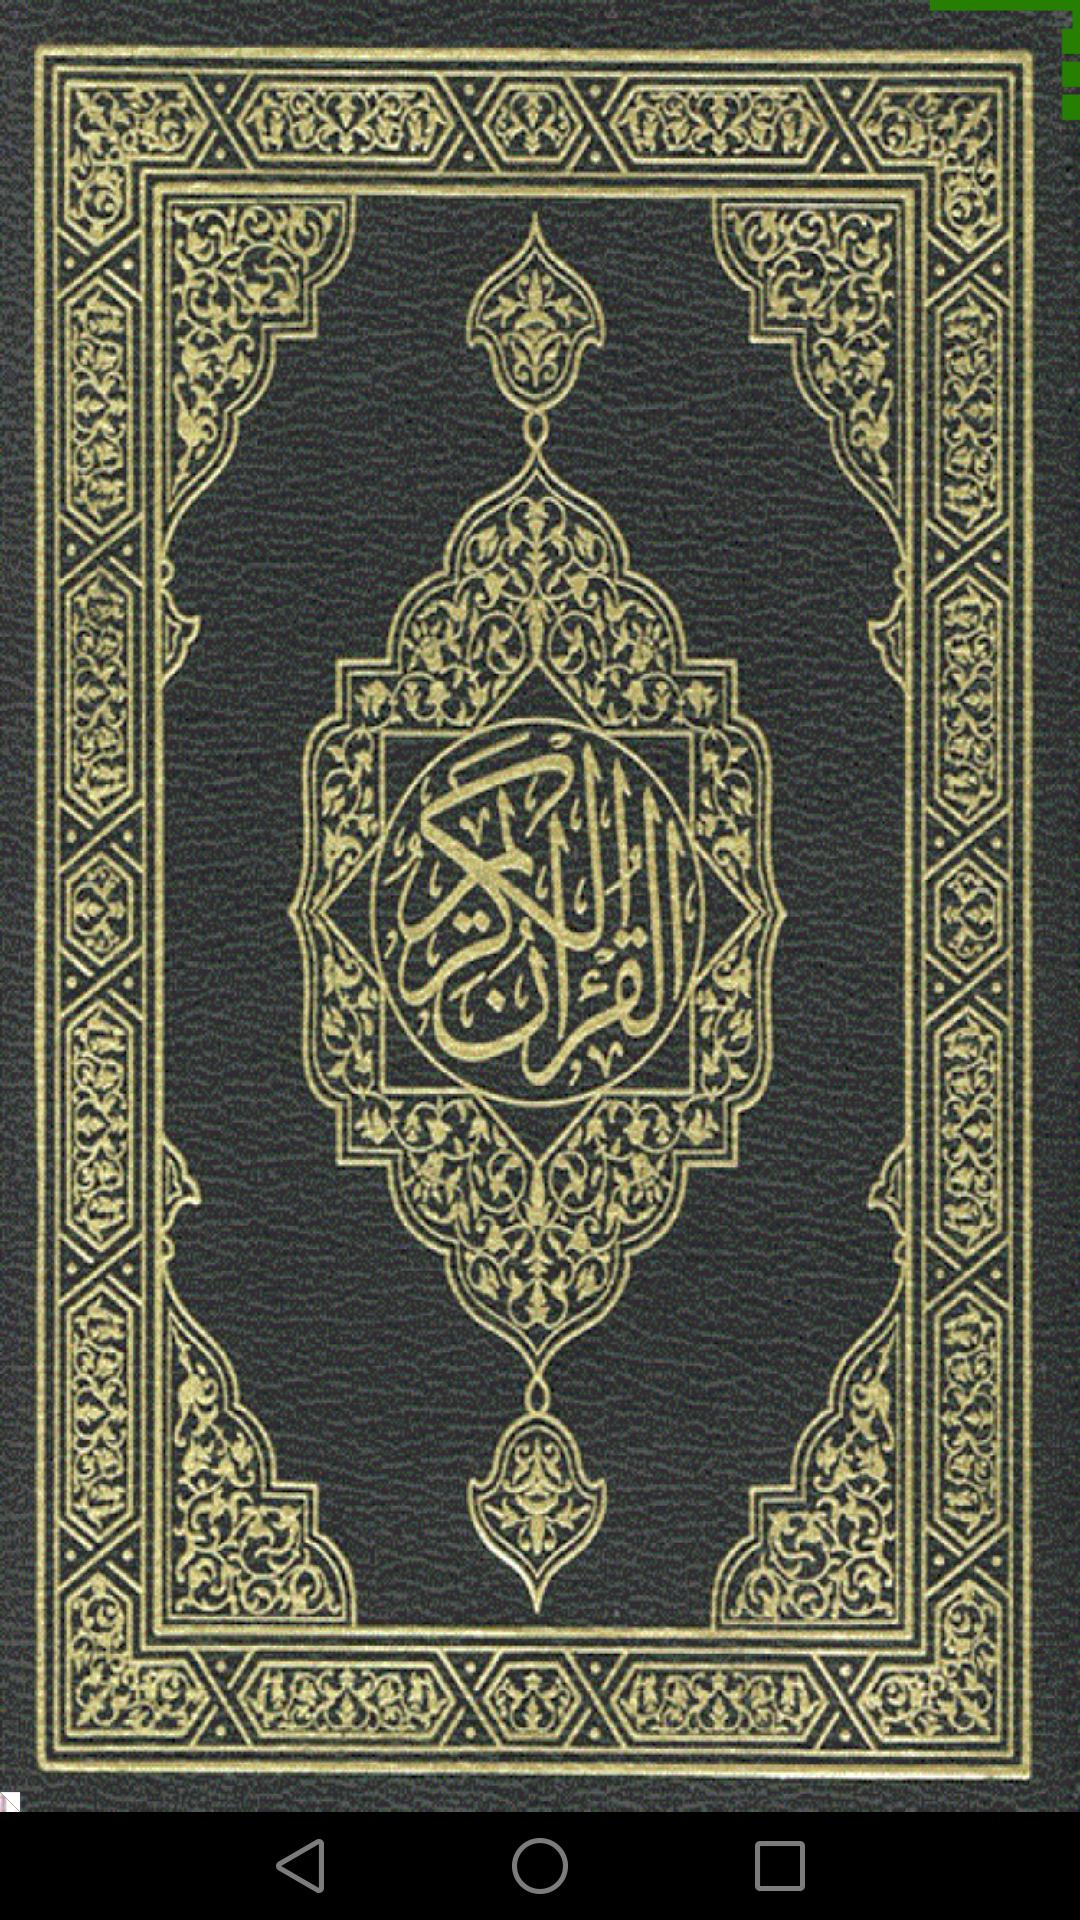 Al Quran Al karim for Android - APK Download